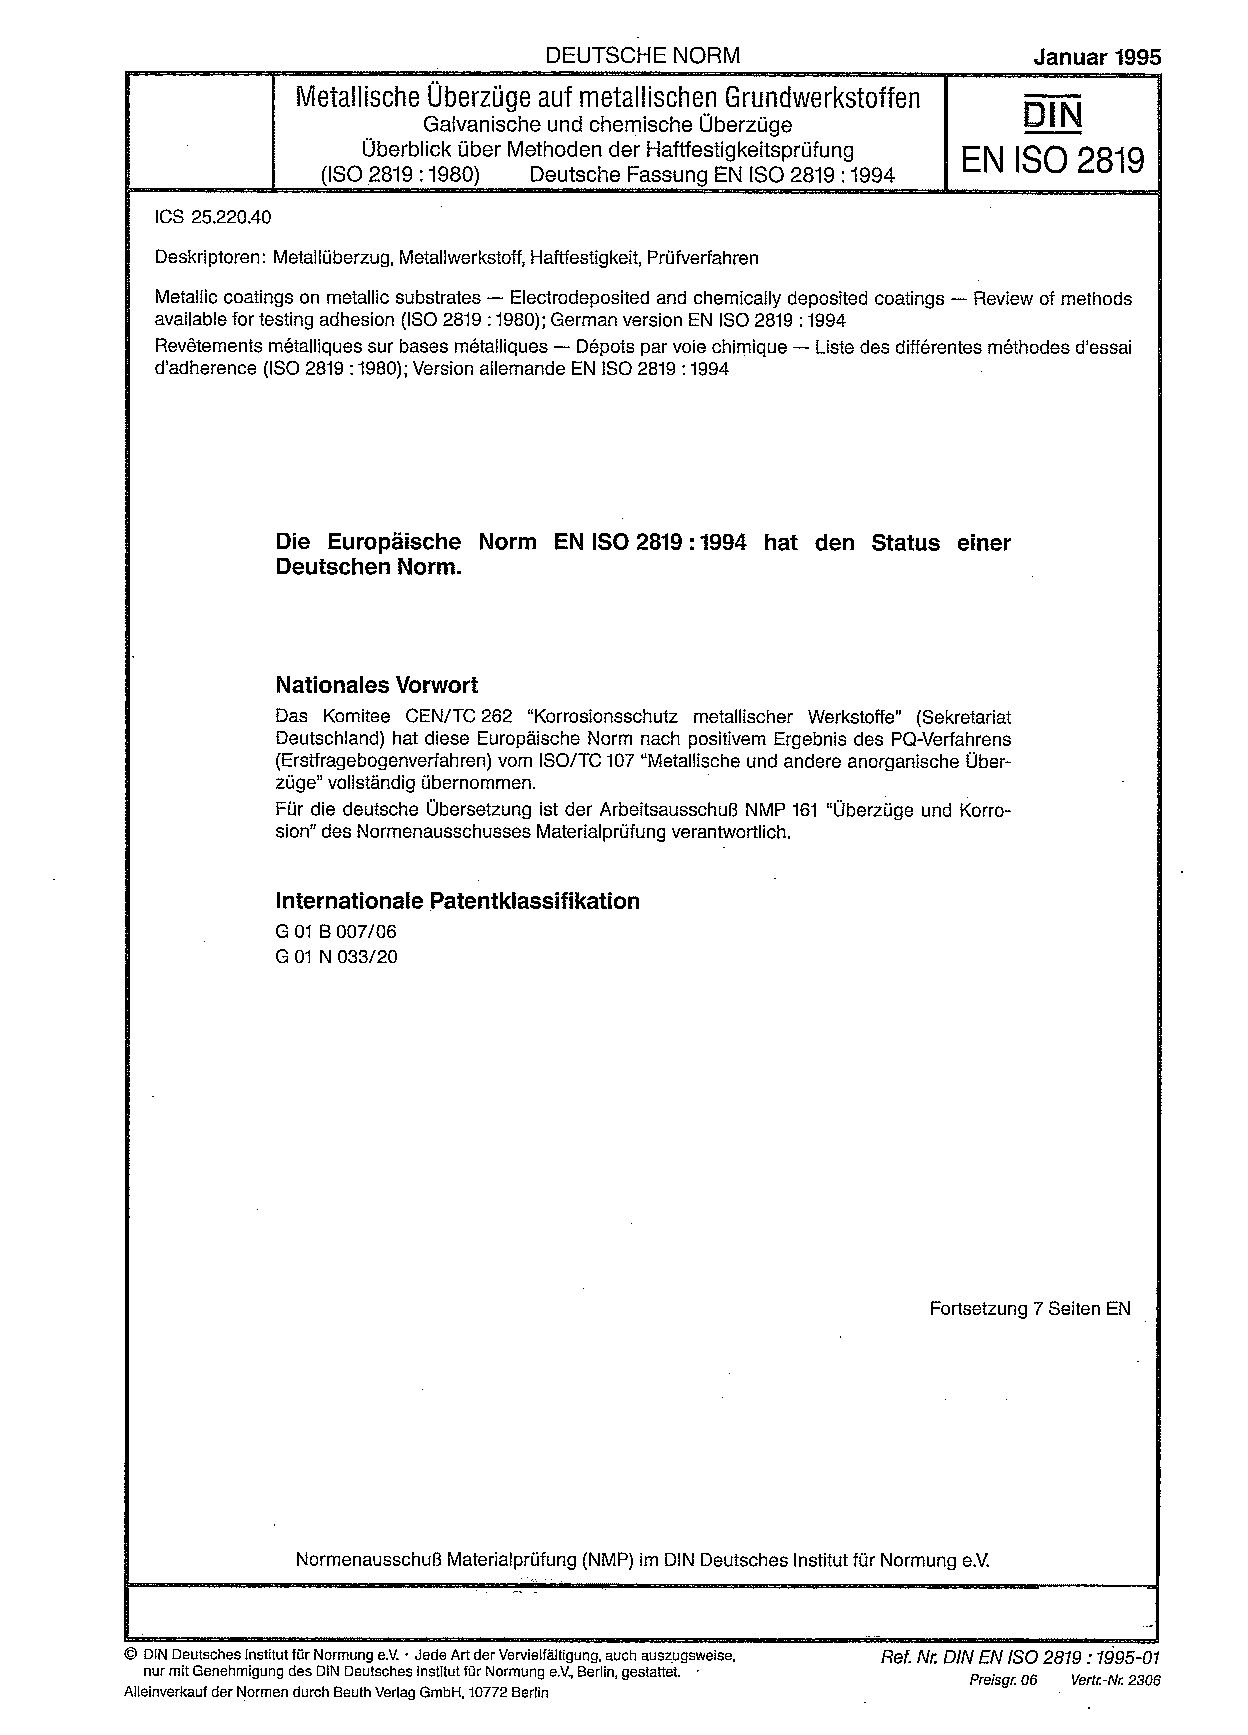 DIN EN ISO 2819:1995封面图